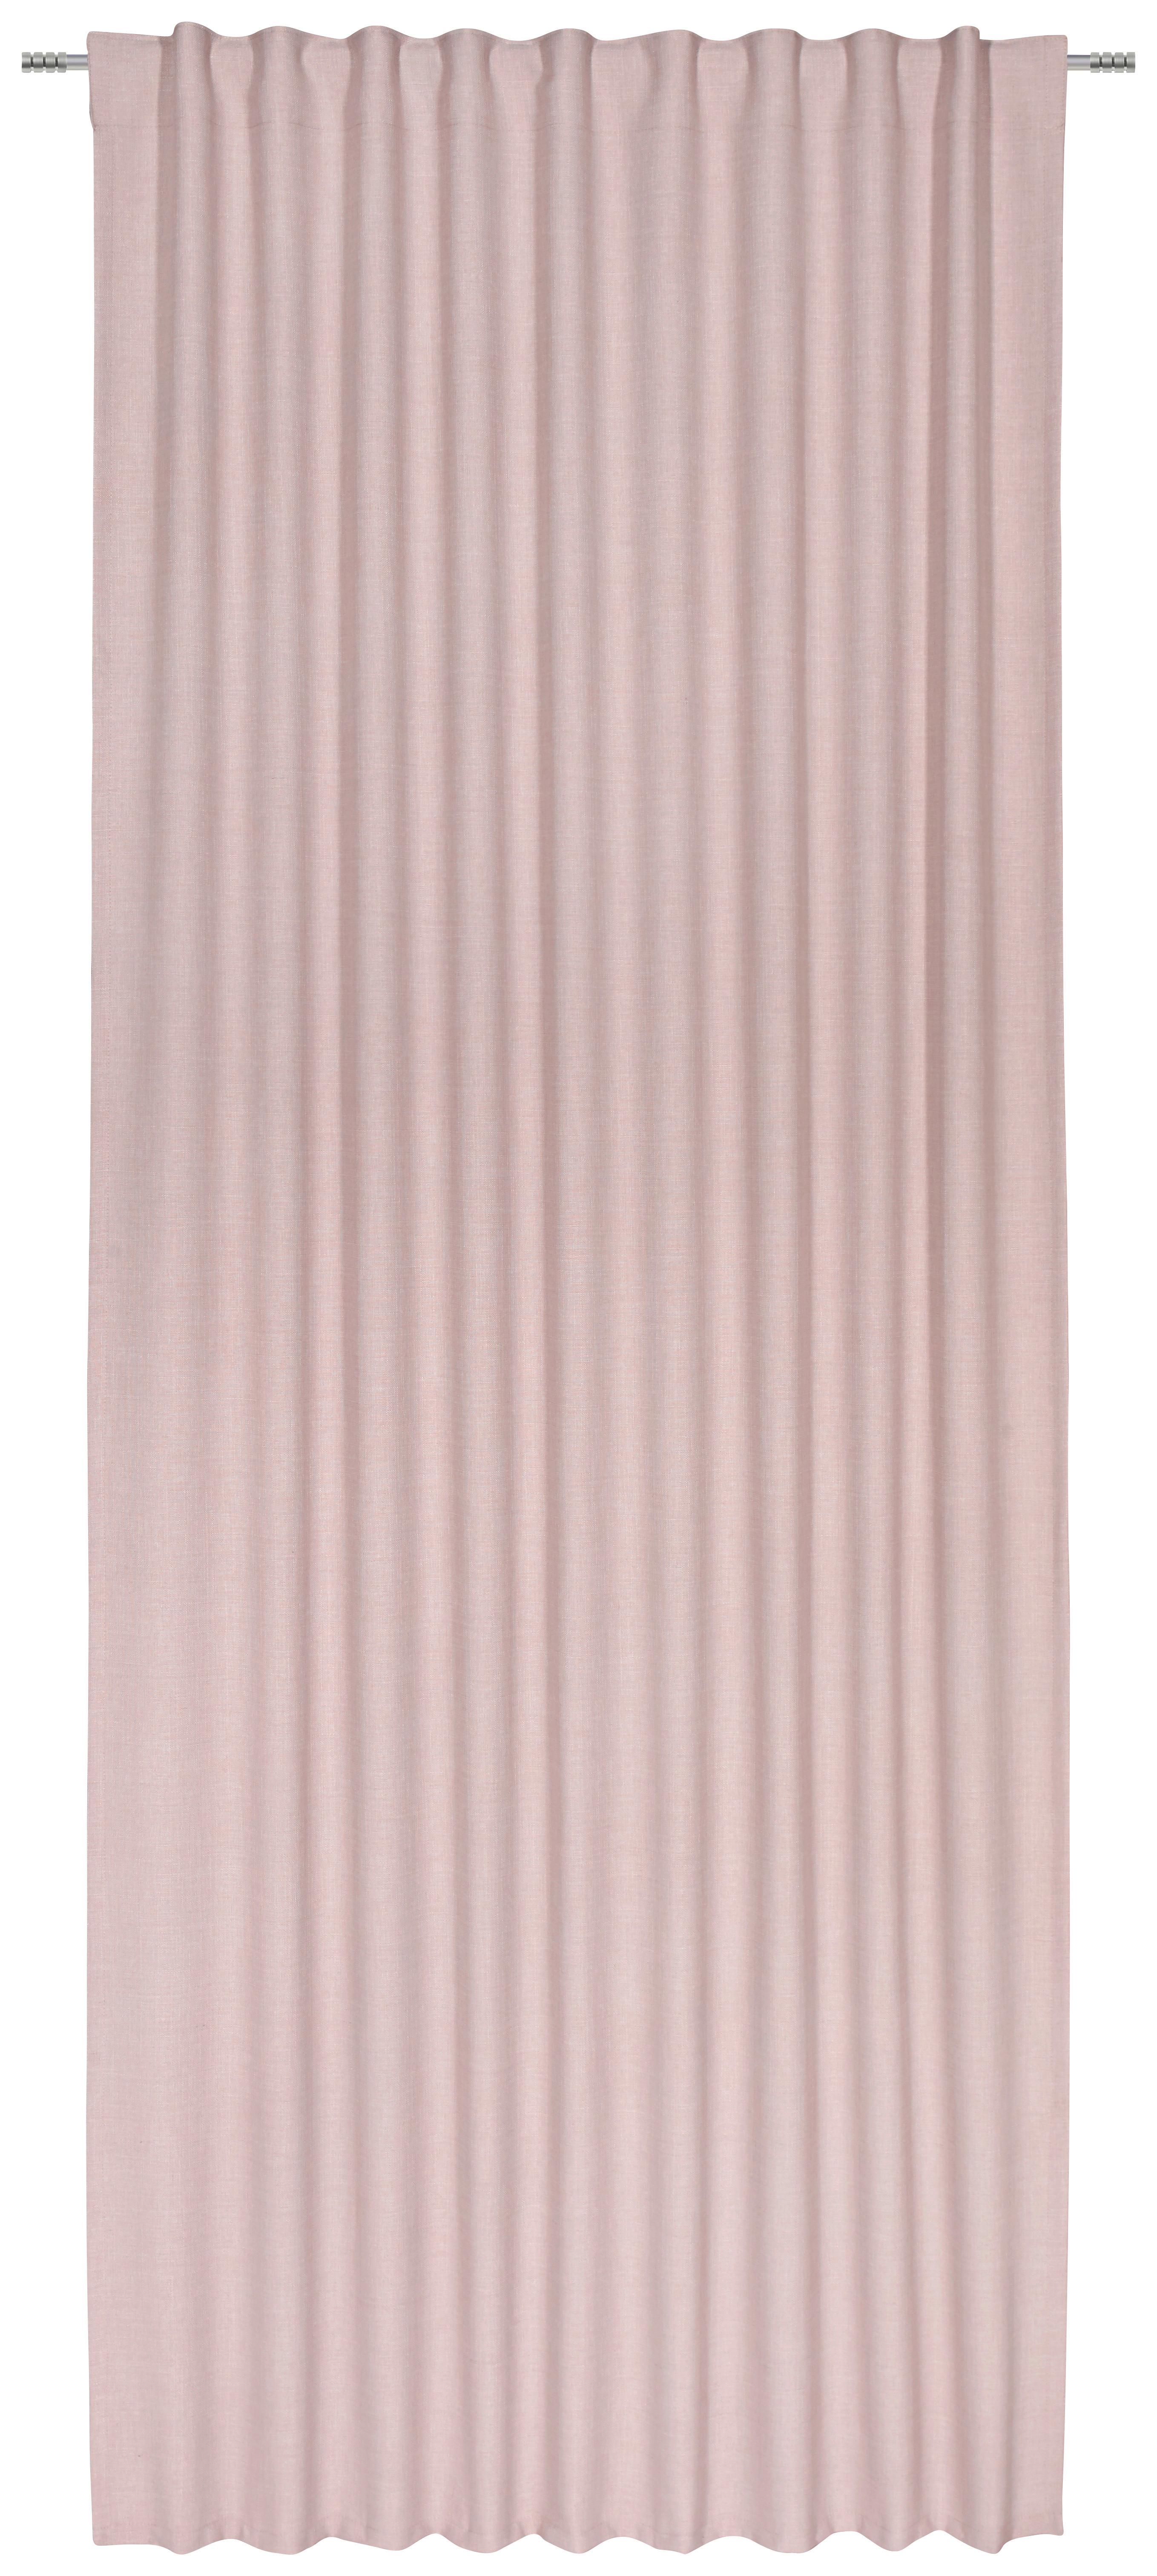 Záves Leo, 135/255cm, Ružová - ružová, textil (135/255cm) - Premium Living